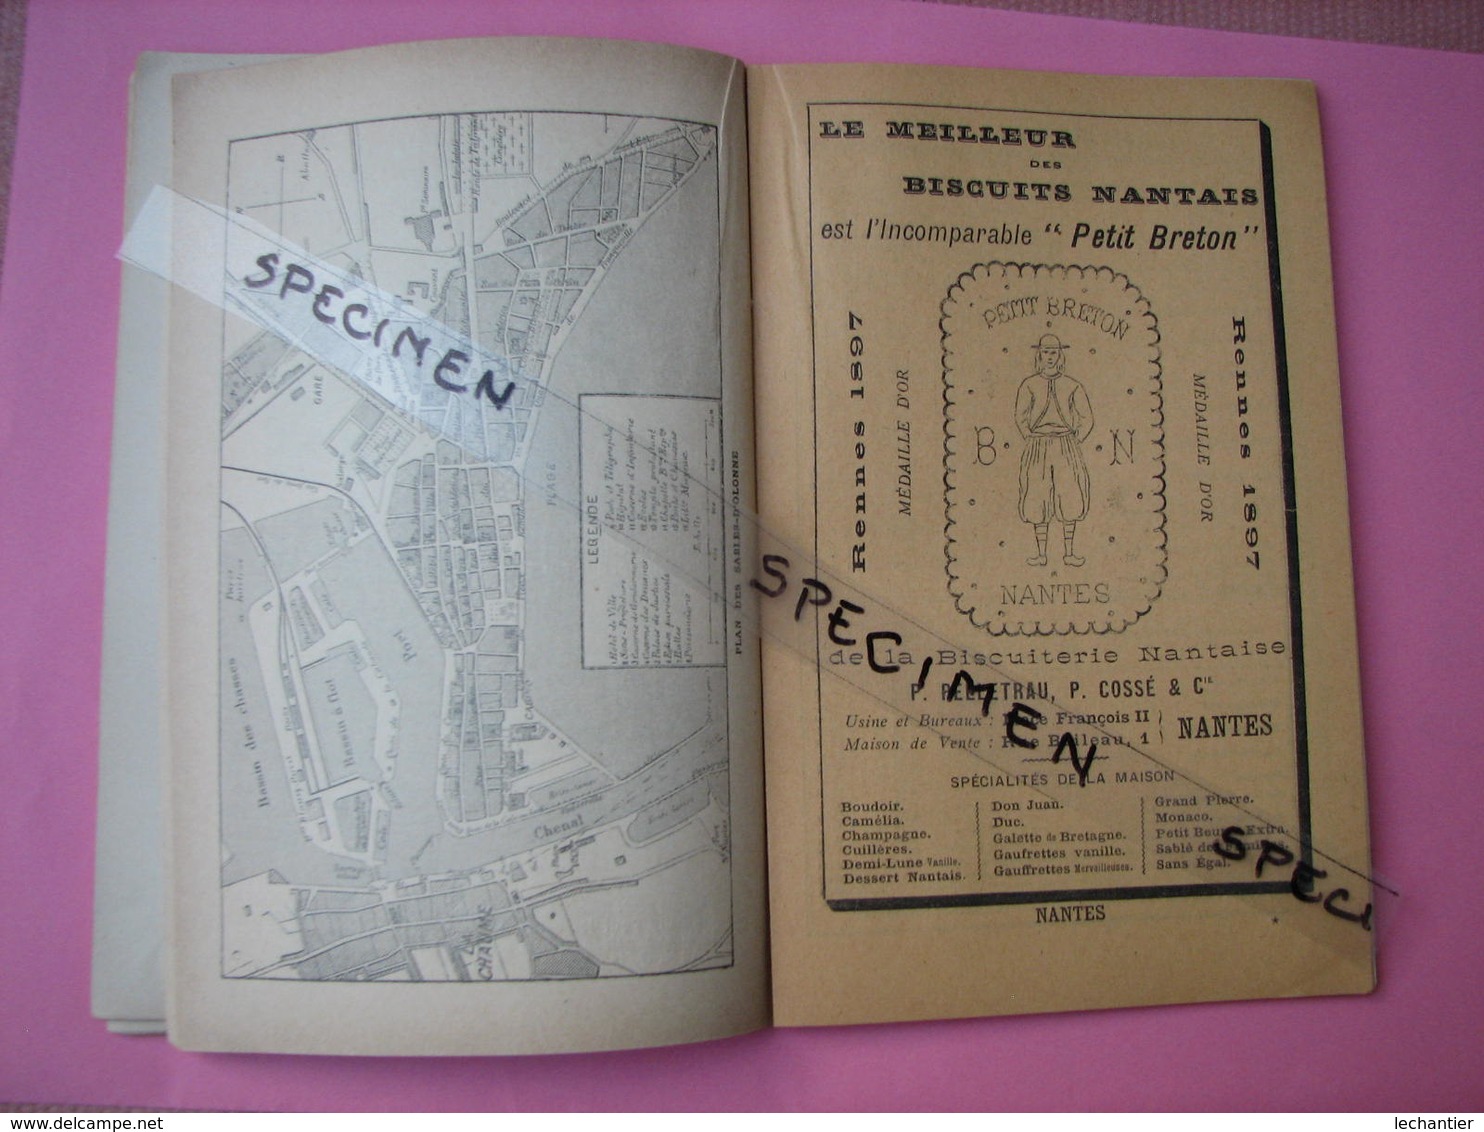 Chemins de Fer de L'Etat 1889 Bains de Mer de L'Ocean Guide illusté  124 pages TBE